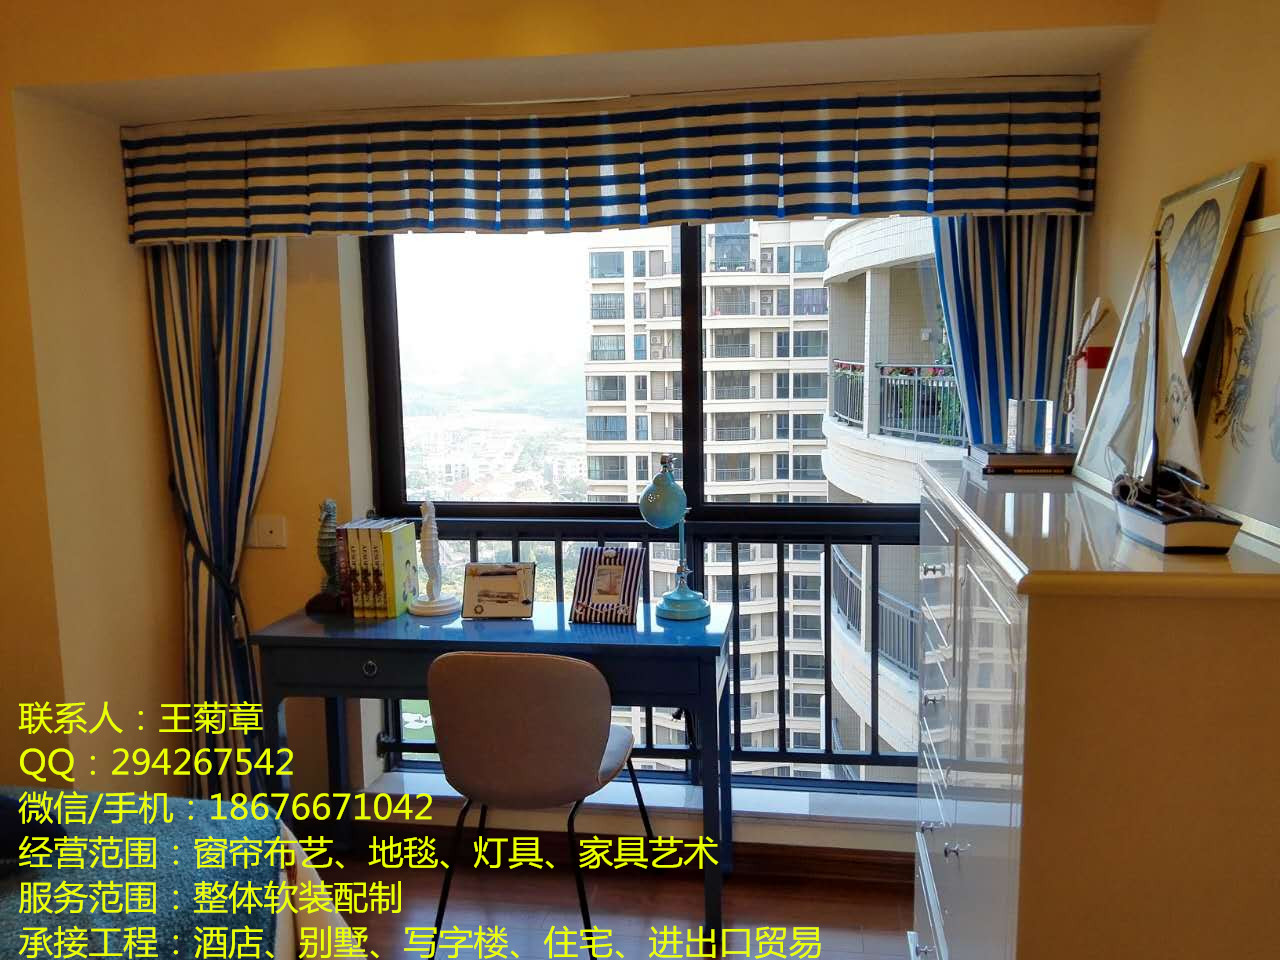 深圳室内软装设计效果图 整体专业空间设计